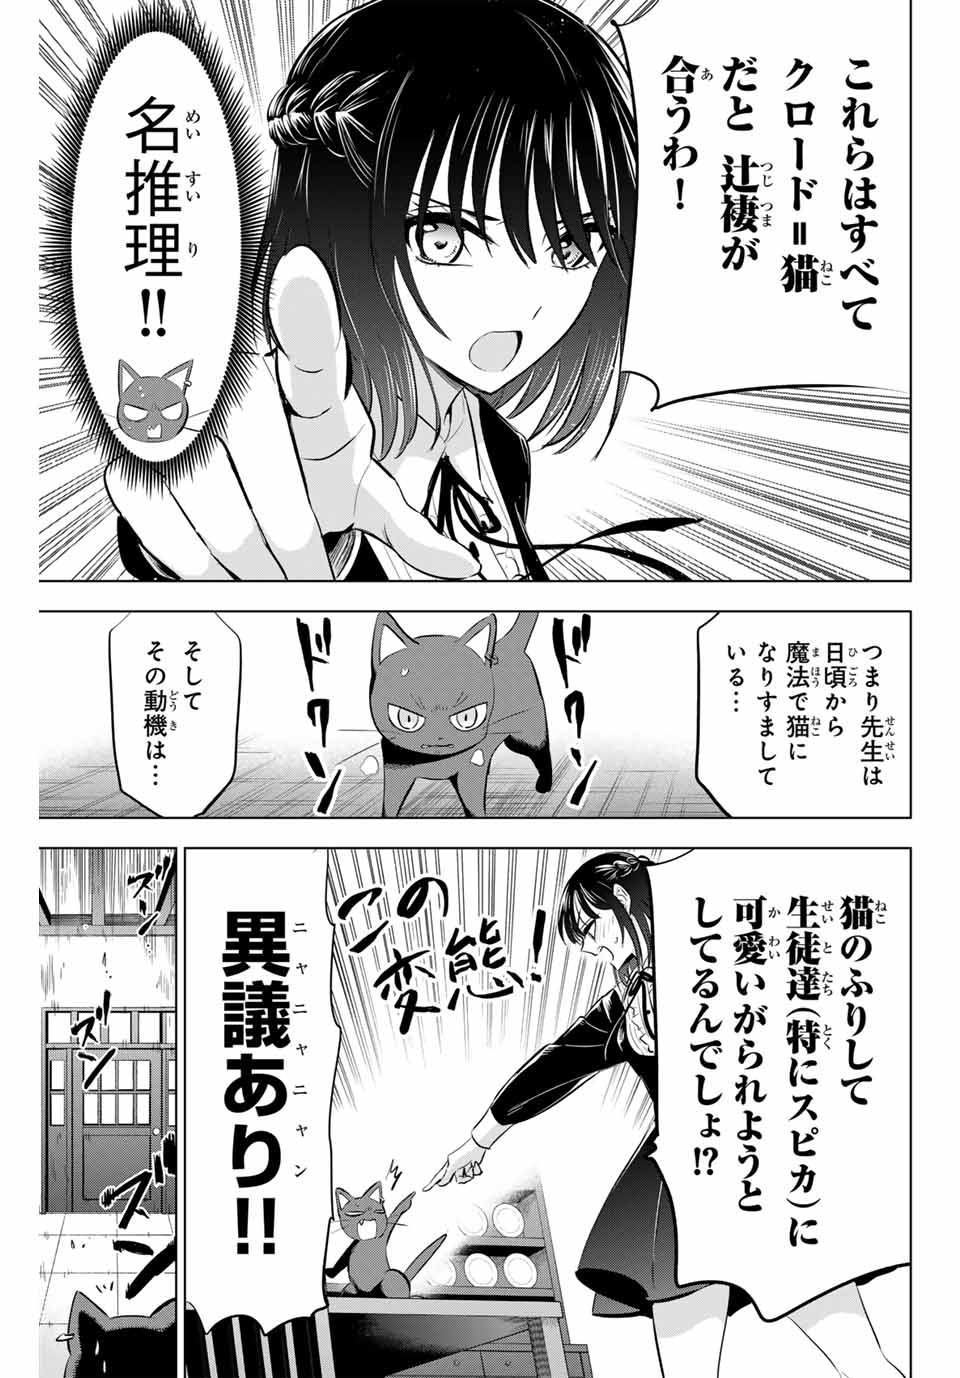 Kuroneko to Majo no Kyoushitsu - Chapter 61 - Page 7